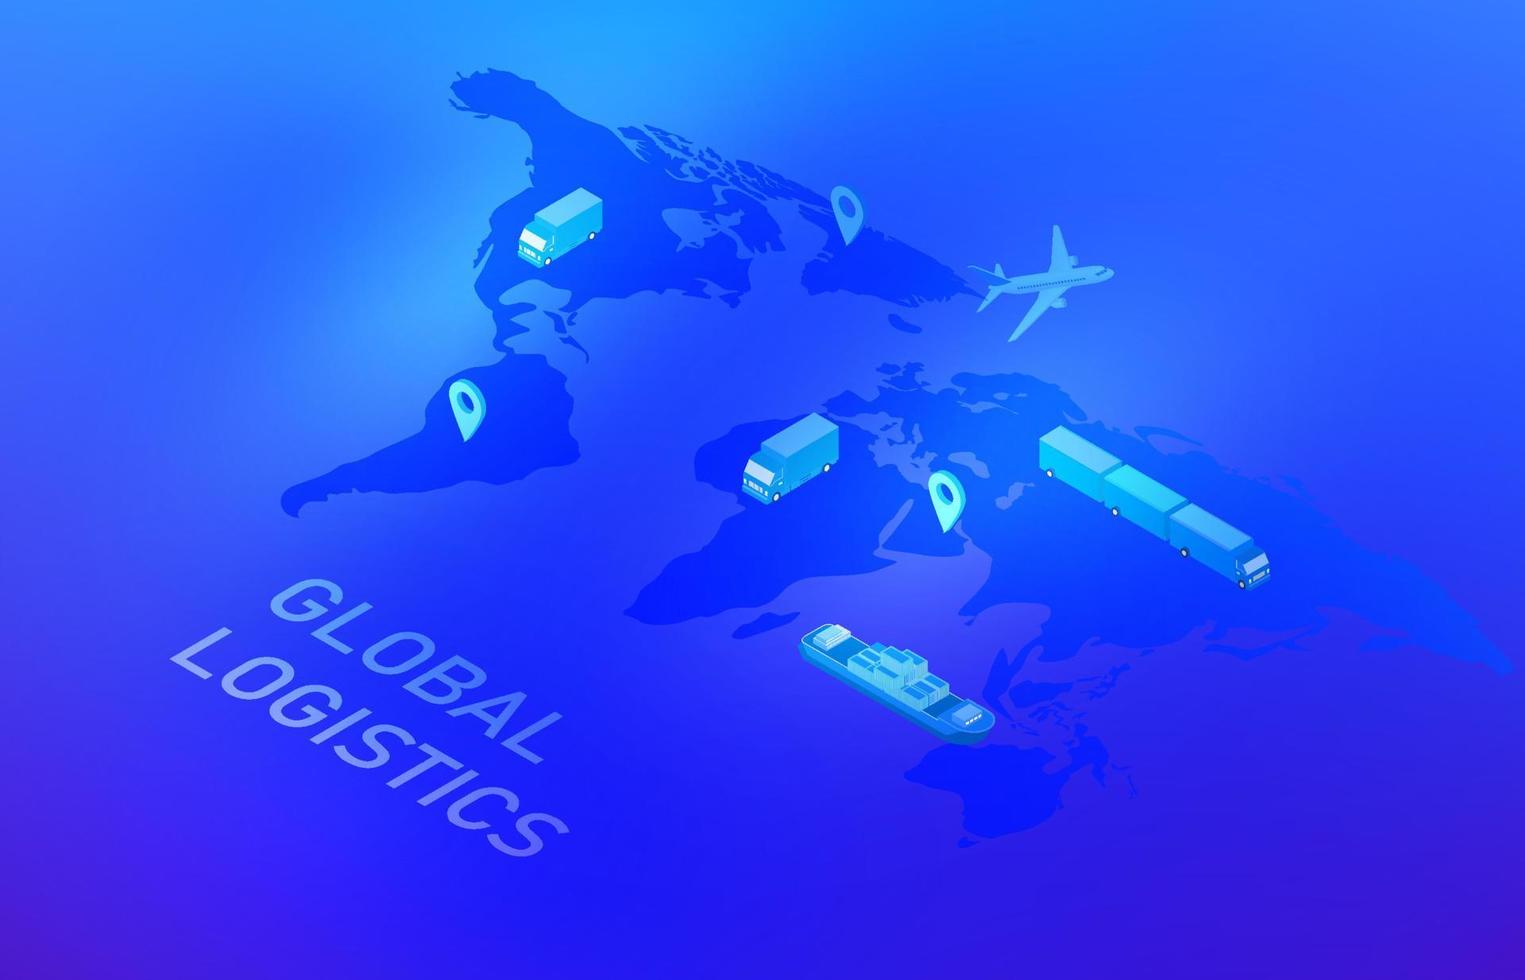 globalt online smart logistikkoncept, affärslogistik, fraktleverans med lastbil, fartyg och flyg, med transportteknik vektorillustration vektor